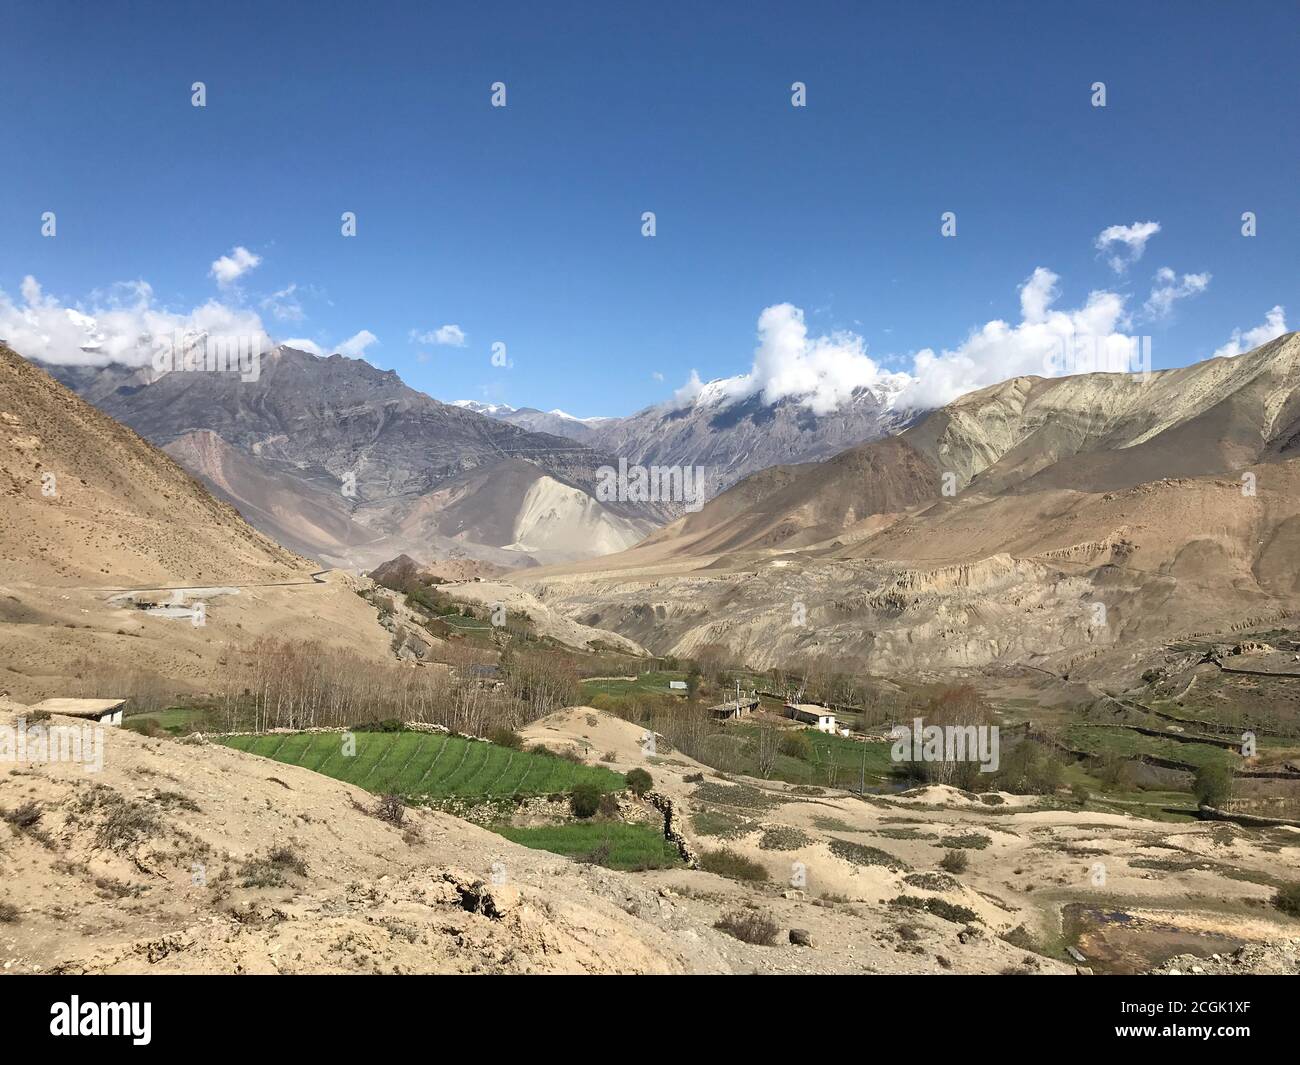 Tolle Aussicht auf das Dorf Kagbeni, Kali Gandaki Tal, Mustang, Nepal. Wunderschöne Berglandschaft. Majestätische Himalayan Range. Wunderschöne tibetische Natur Stockfoto